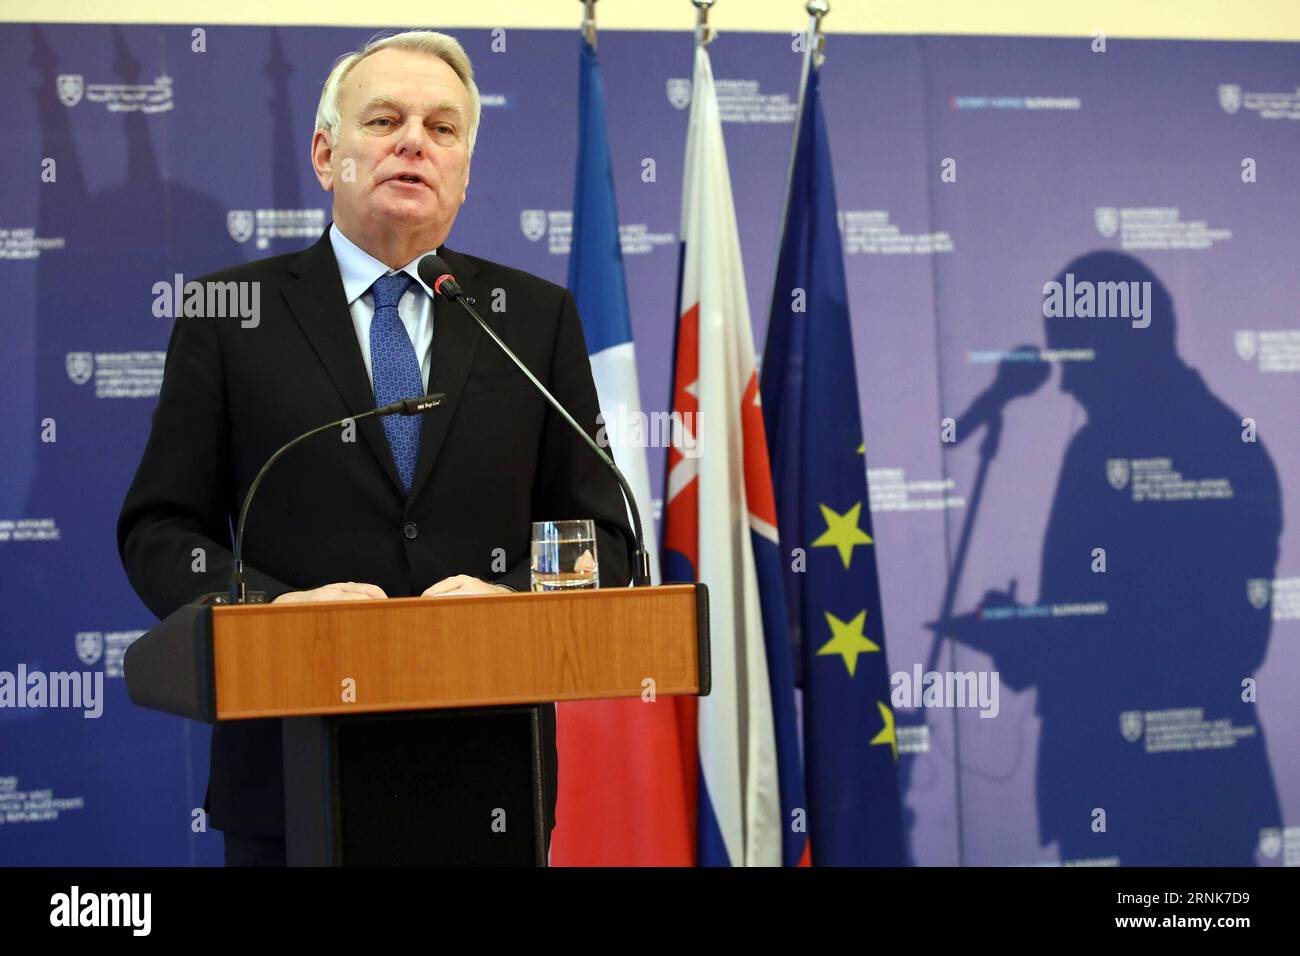 (170310) -- BRATISLAVA, 10 marzo 2017 -- il ministro degli Esteri francese Jean-Marc Ayrault interviene durante una conferenza stampa con il ministro slovacco degli affari esteri ed europei Miroslav Lajcak (non nella foto) a Bratislava, capitale della Slovacchia, il 10 marzo 2017. L'Europa a più velocità non può significare una divisione gerarchica dell'Unione europea (UE) e non può nuocere all'unità dell'UE, il ministro degli Esteri francese Jean-Marc Ayrault ha annunciato venerdì in una conferenza stampa. ) SLOVACCHIA-BRATISLAVA-FRANCIA-FM-MEETING AndrejxKlizan PUBLICATIONxNOTxINxCHN Bratislava 10 marzo 2017 Minista straniero francese Foto Stock